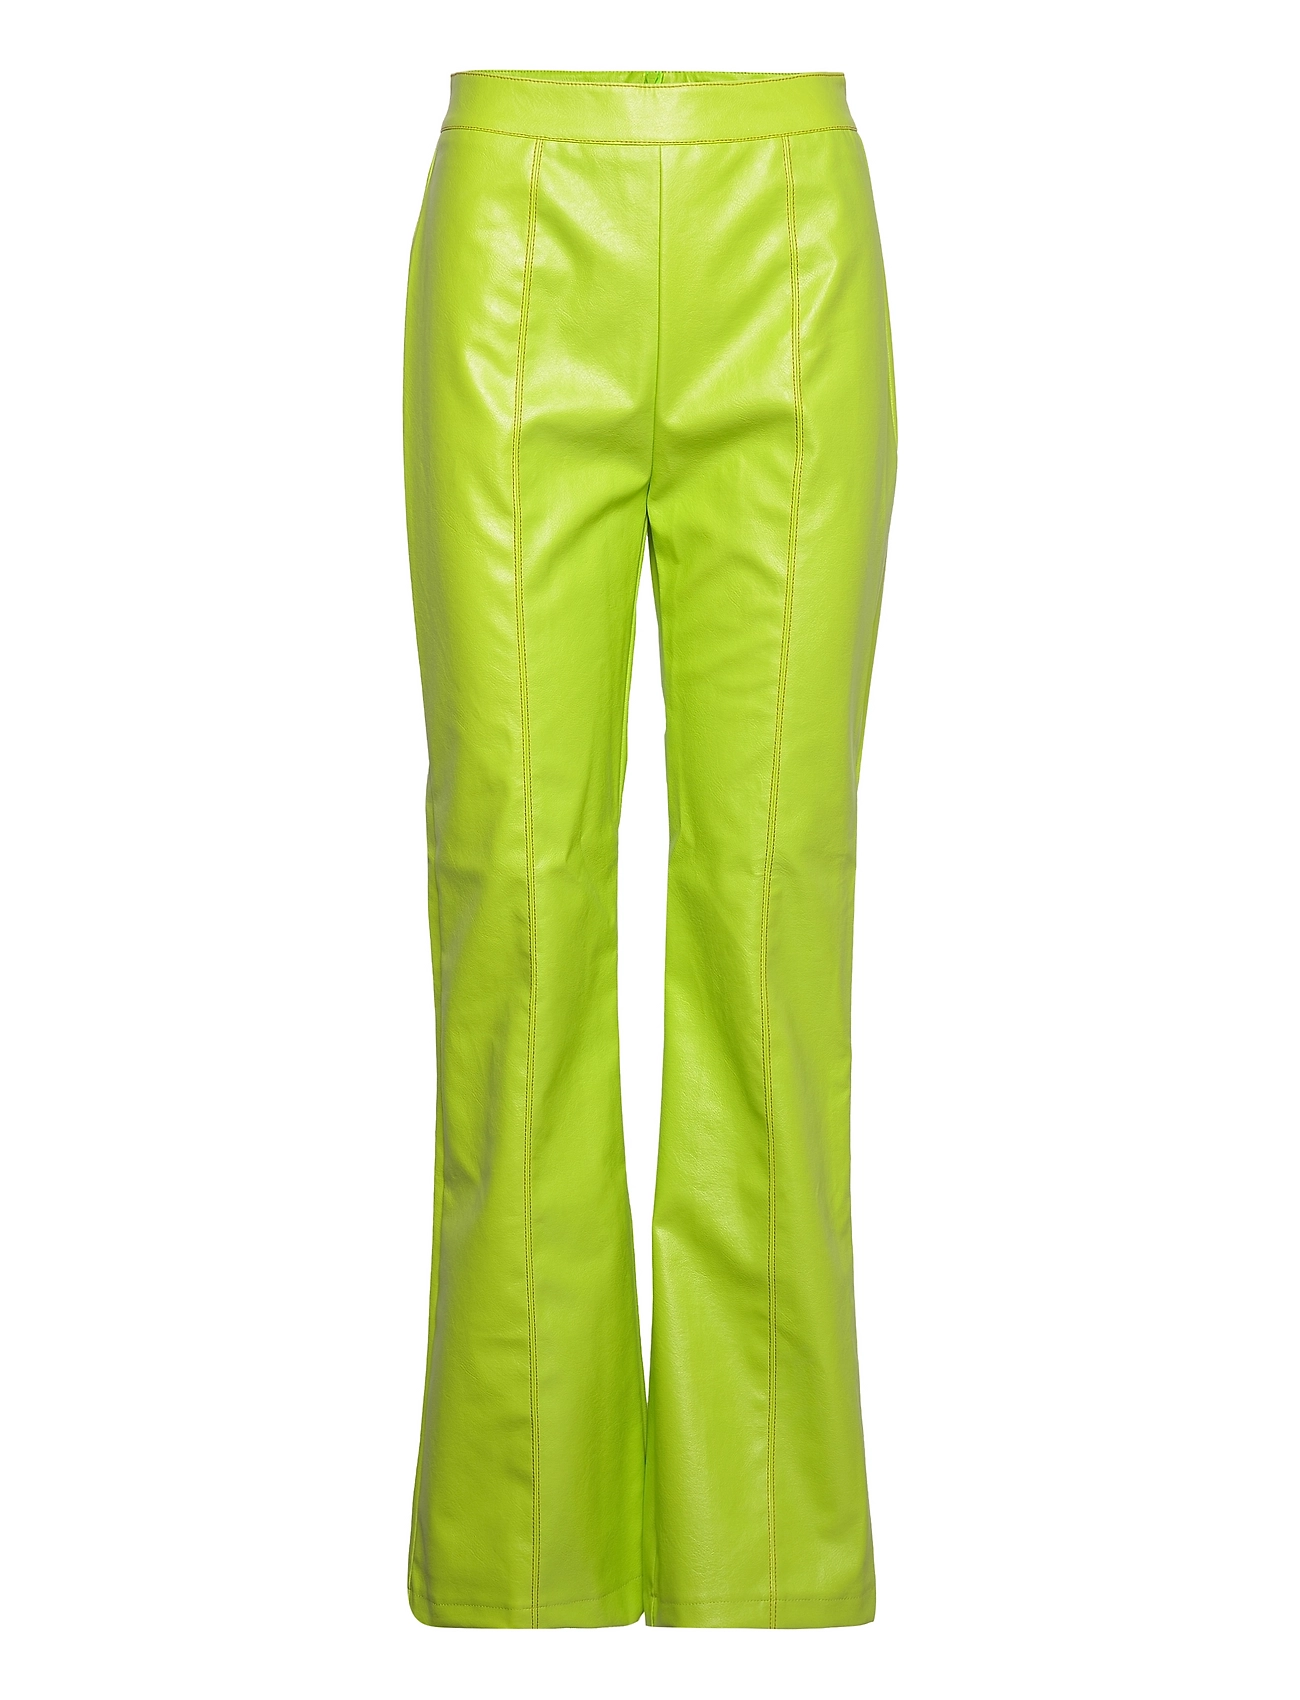 Hosbjerg Fryd Dolly Pants (Green), 311.61 kr udvalg af designer mærker | Booztlet.com